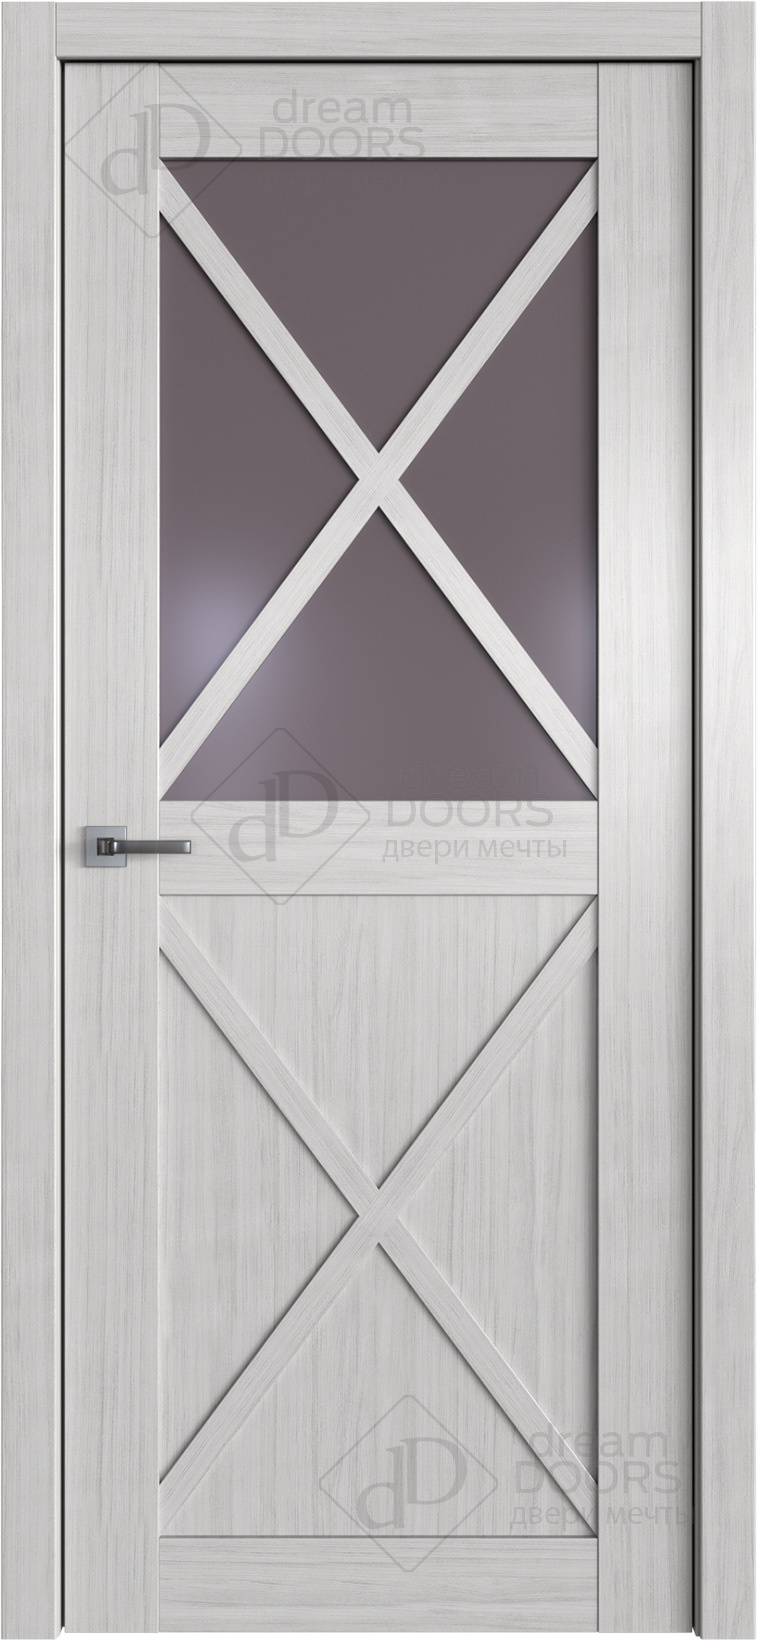 Dream Doors Межкомнатная дверь W38, арт. 20098 - фото №1